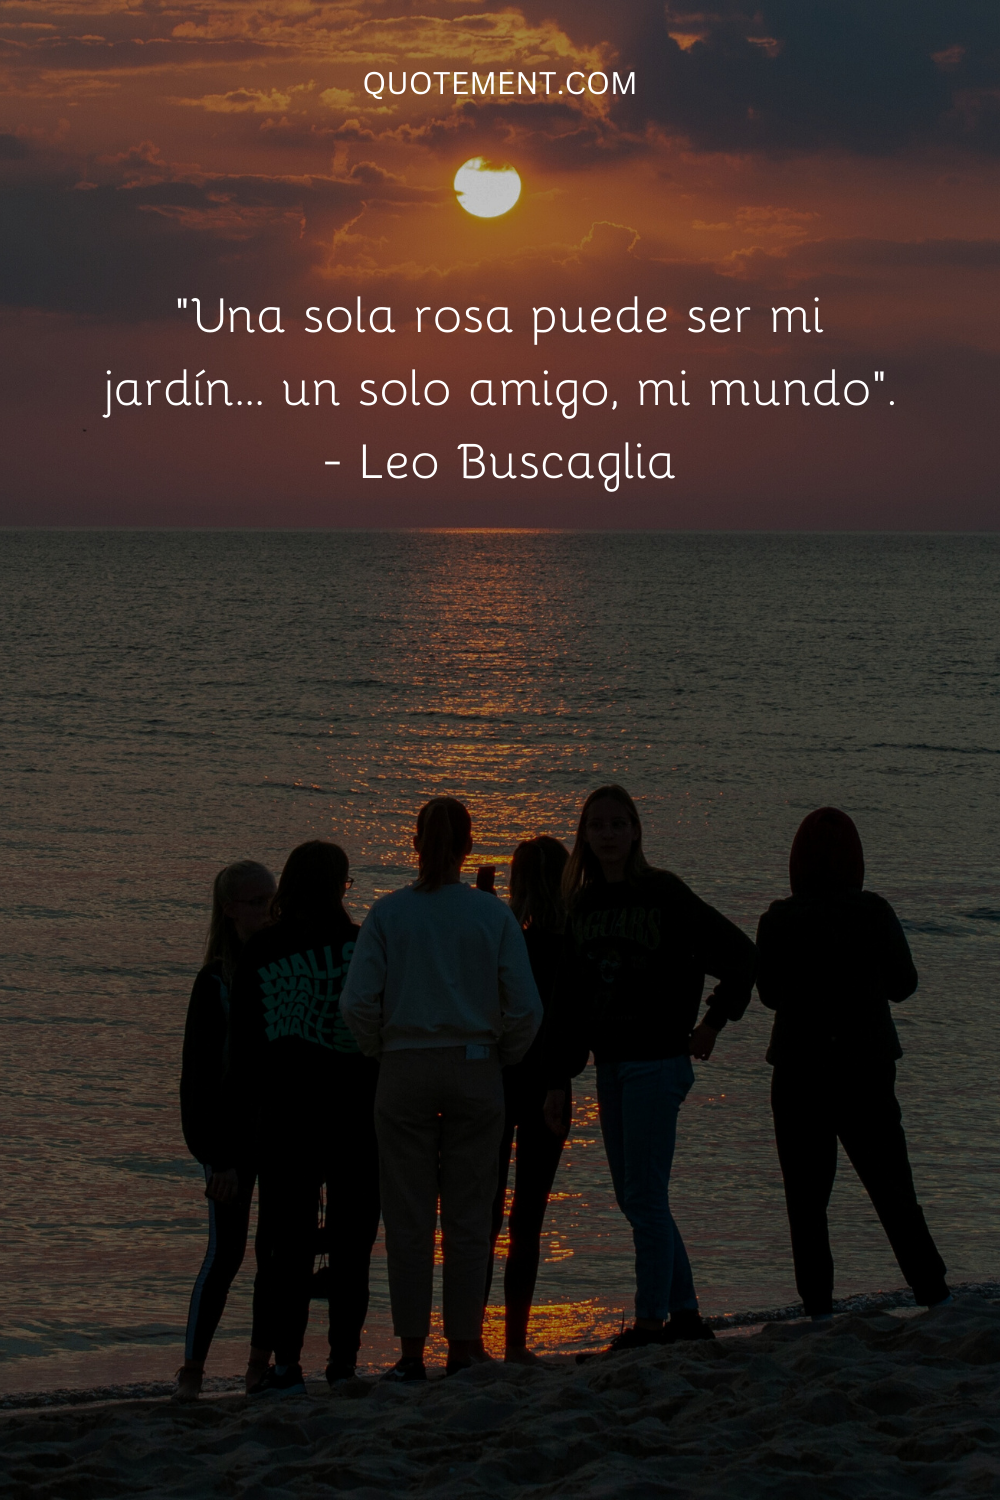 "Una sola rosa puede ser mi jardín... un solo amigo, mi mundo". - Leo Buscaglia